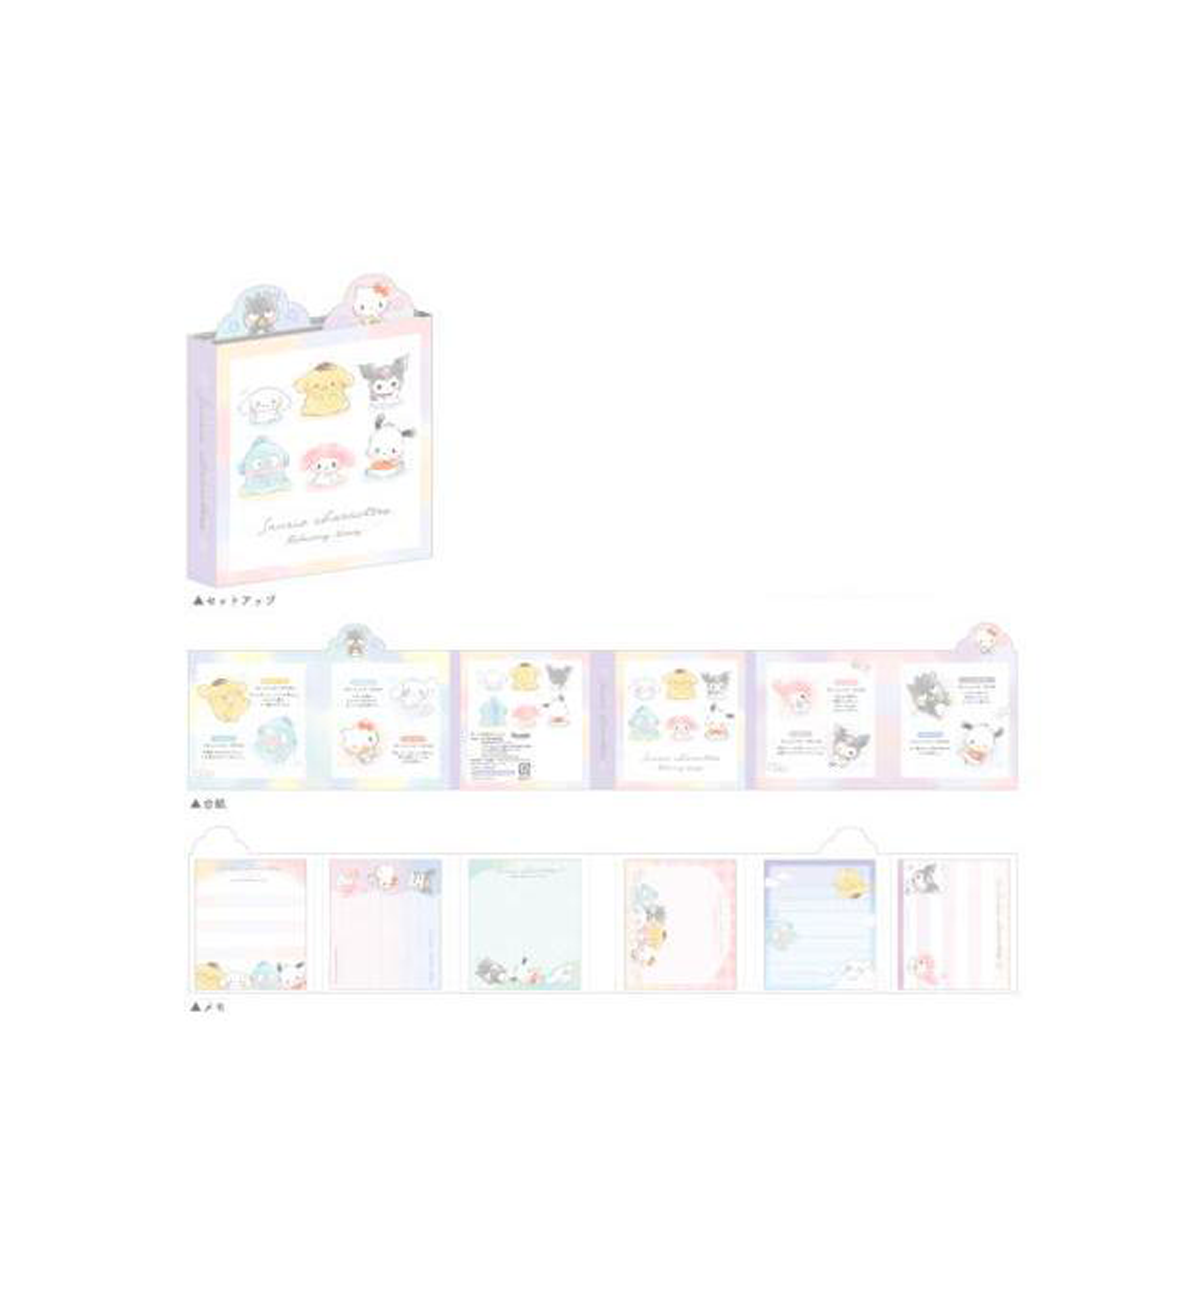 Sanrio Booklet Memopad [Characters]